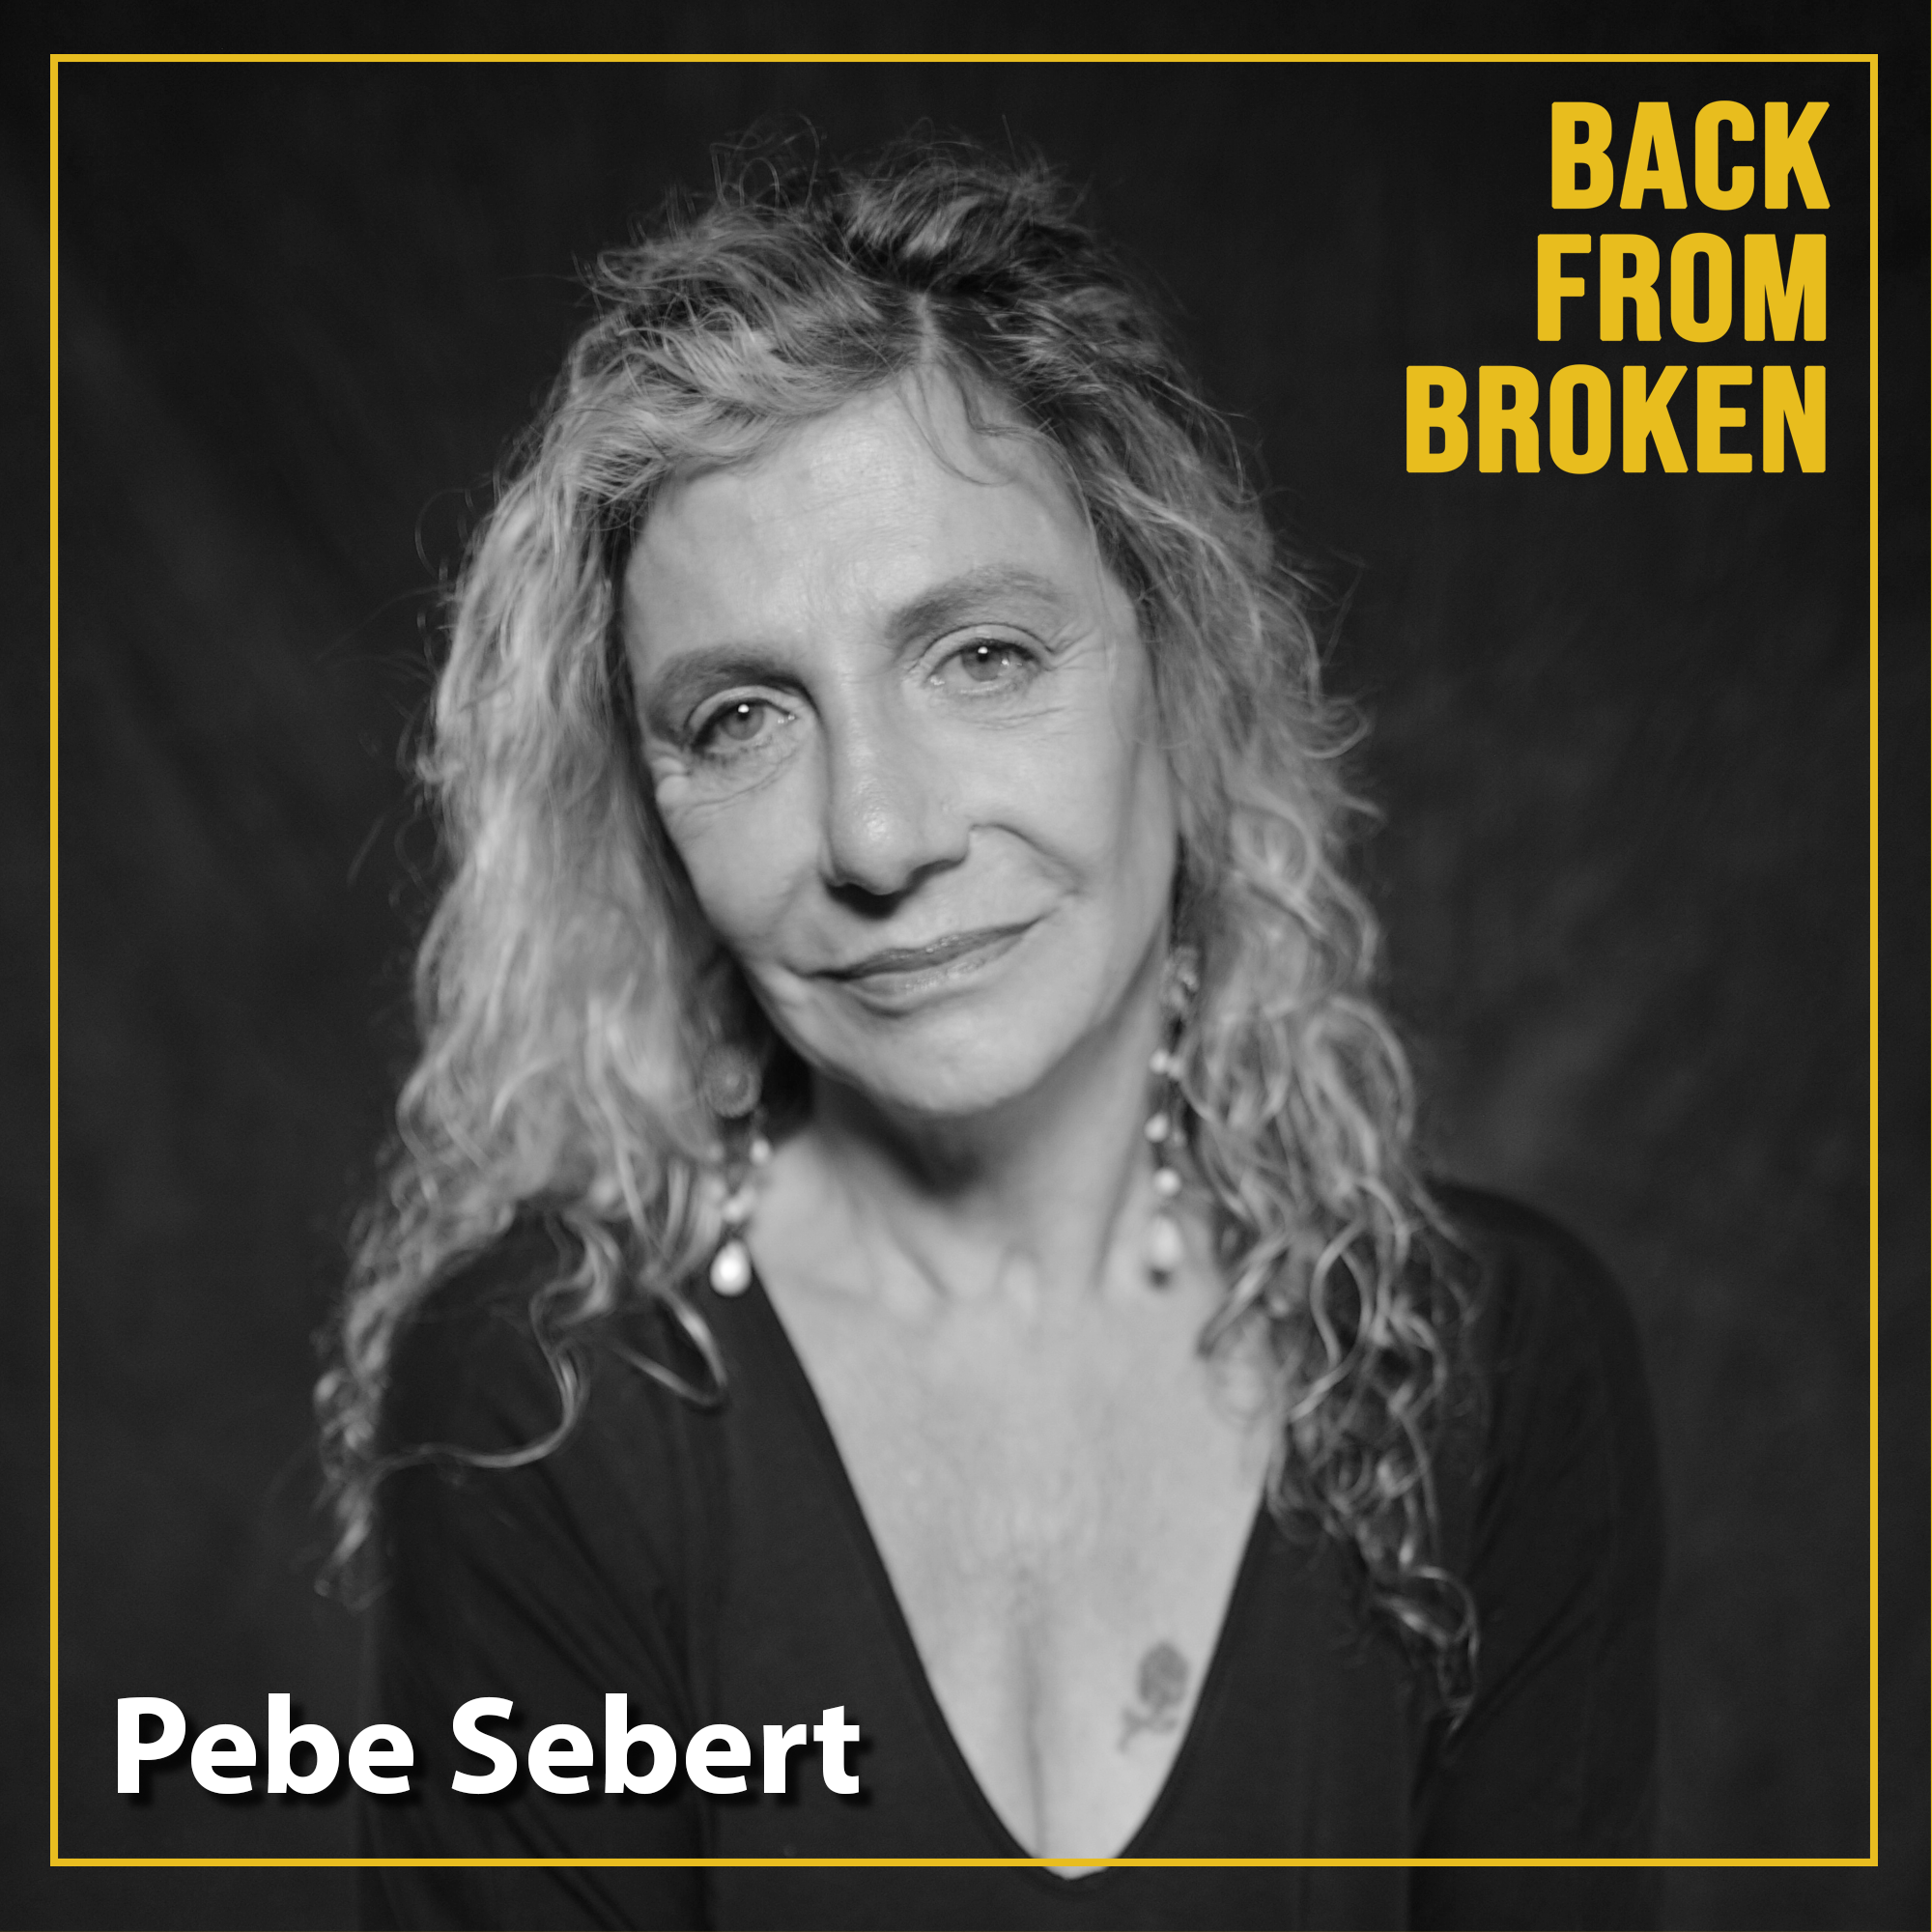 Pebe Sebert